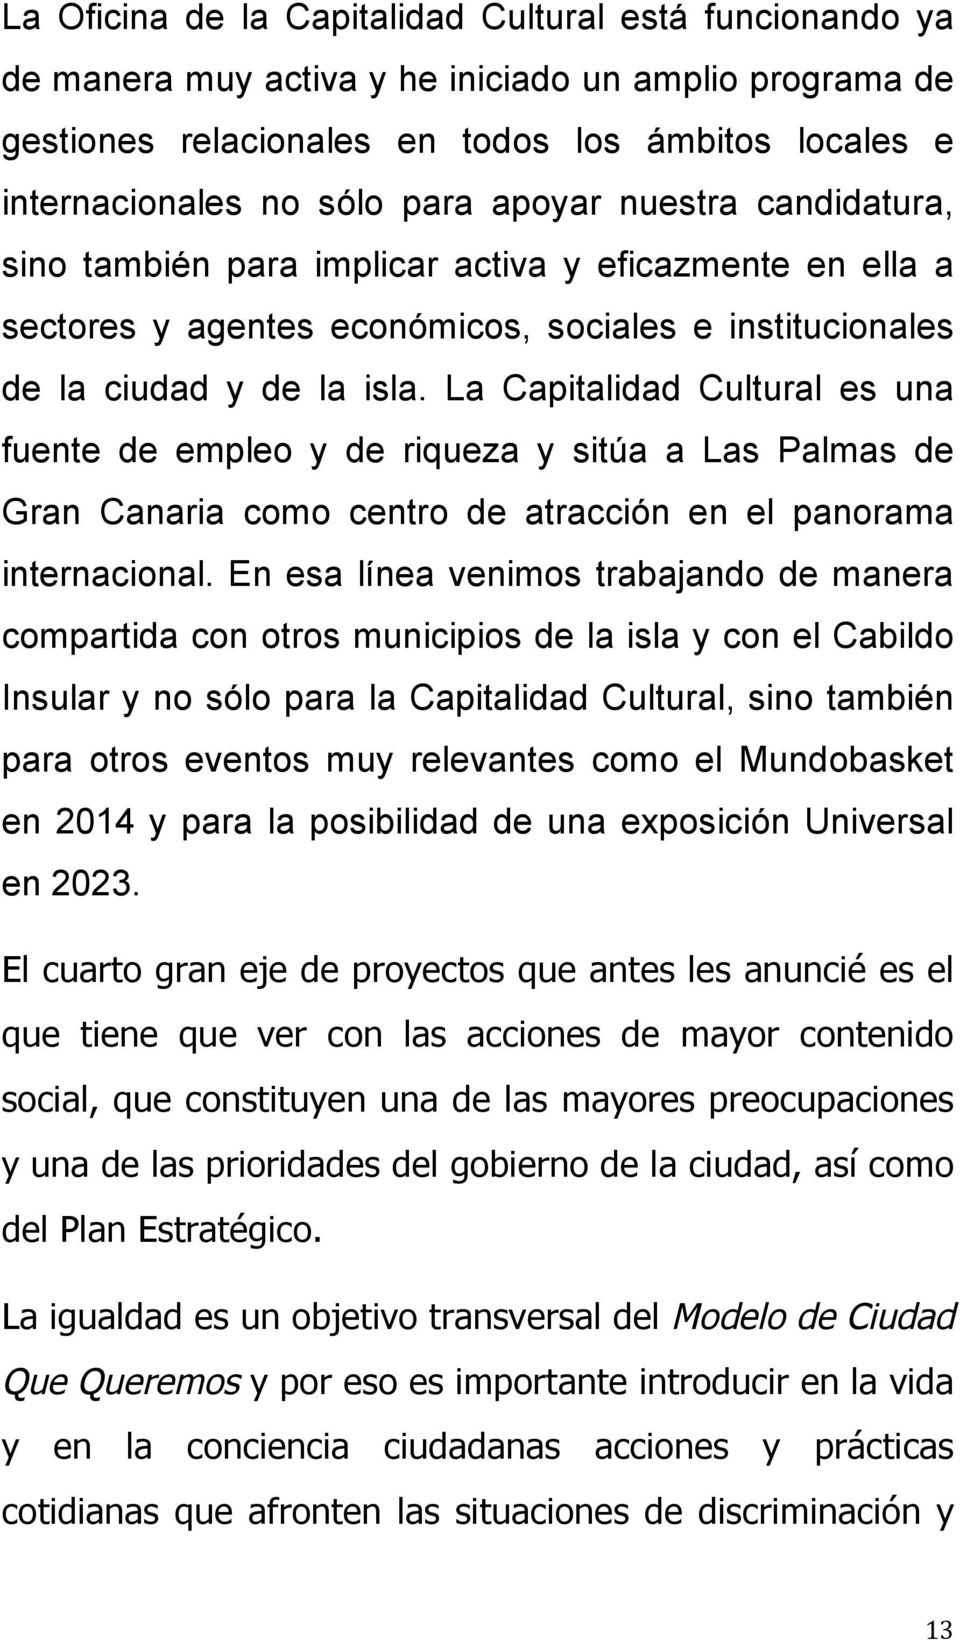 La Capitalidad Cultural es una fuente de empleo y de riqueza y sitúa a Las Palmas de Gran Canaria como centro de atracción en el panorama internacional.